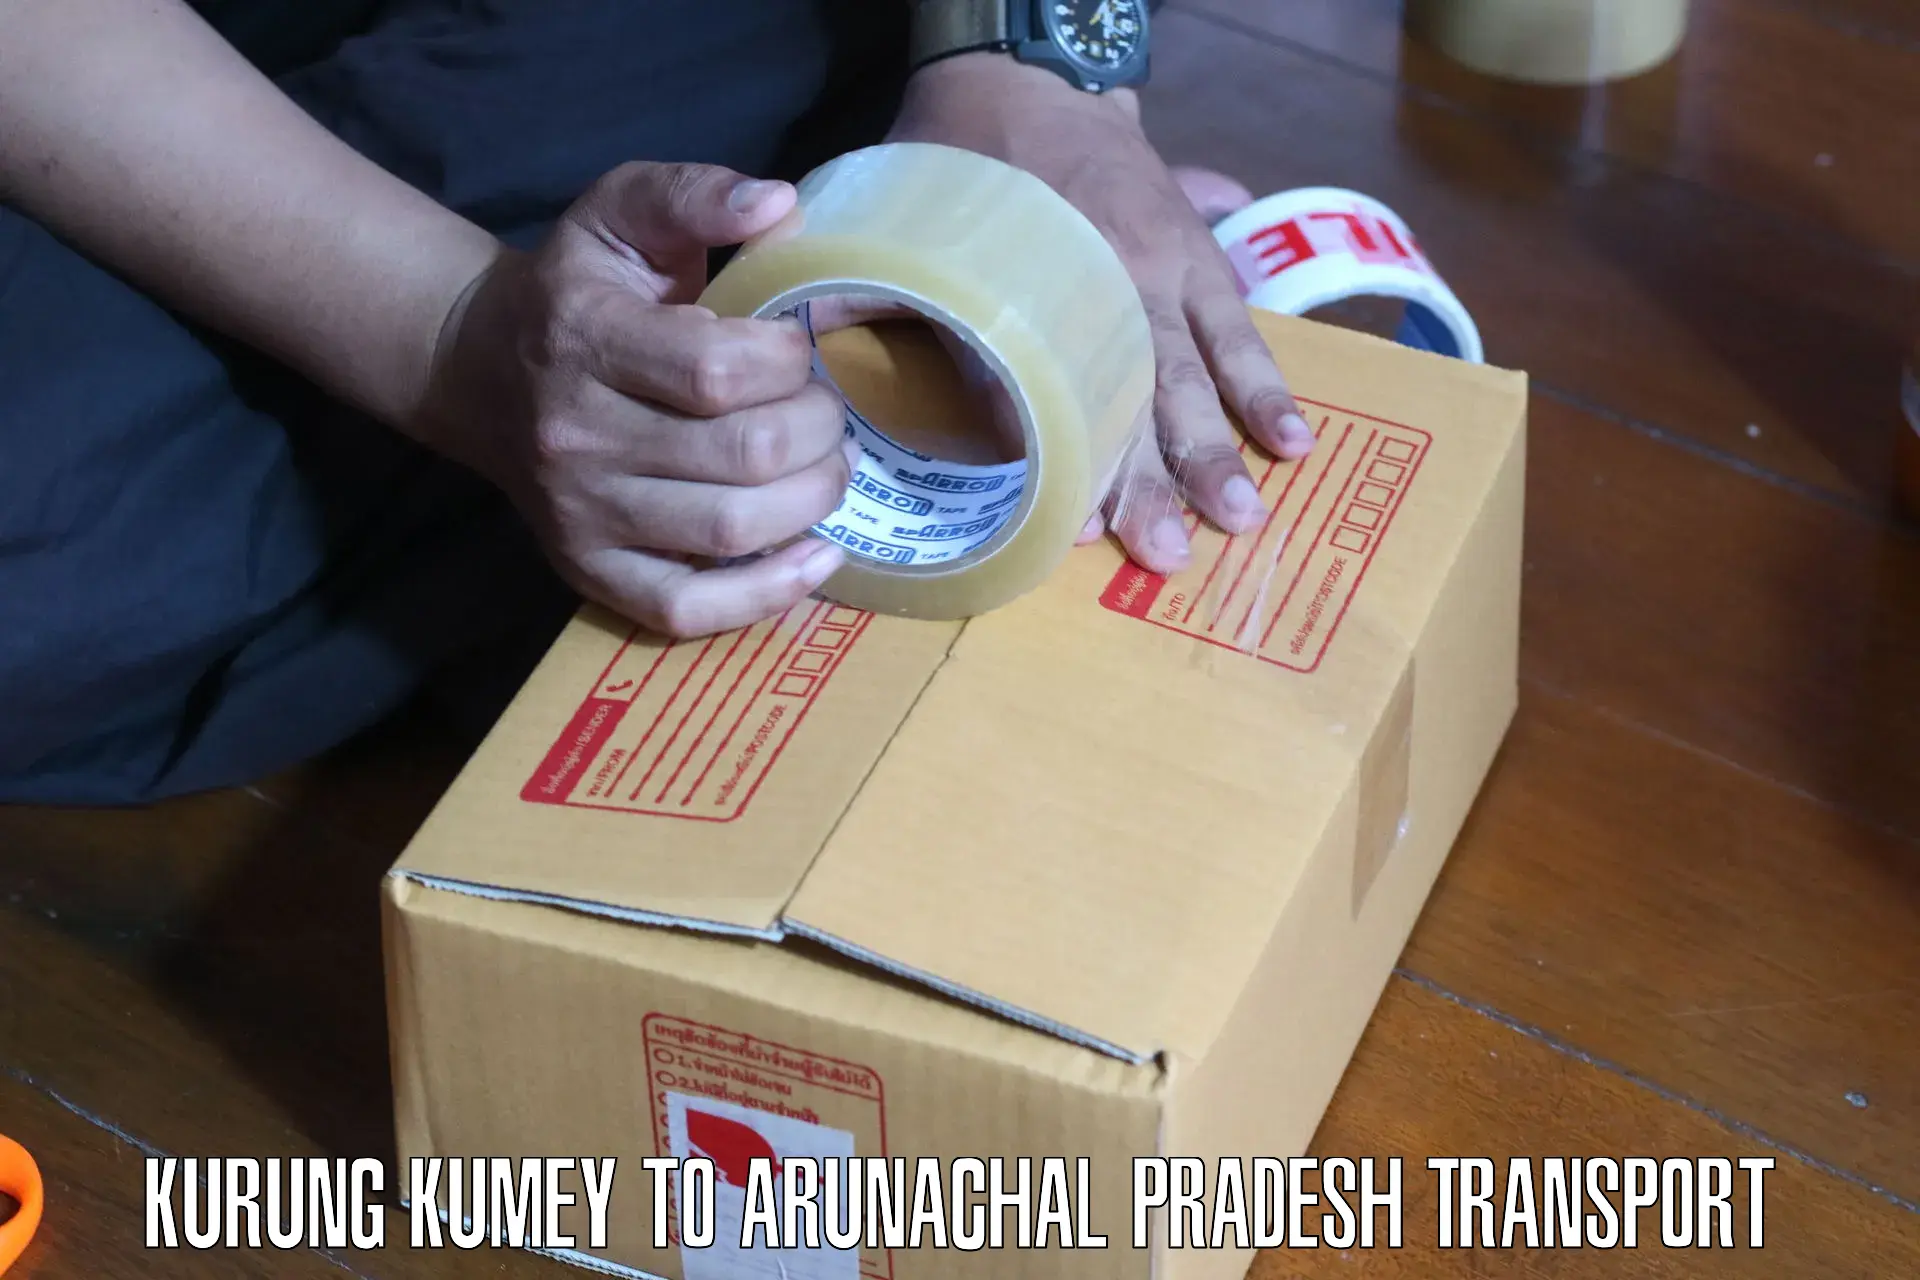 Truck transport companies in India Kurung Kumey to Upper Subansiri